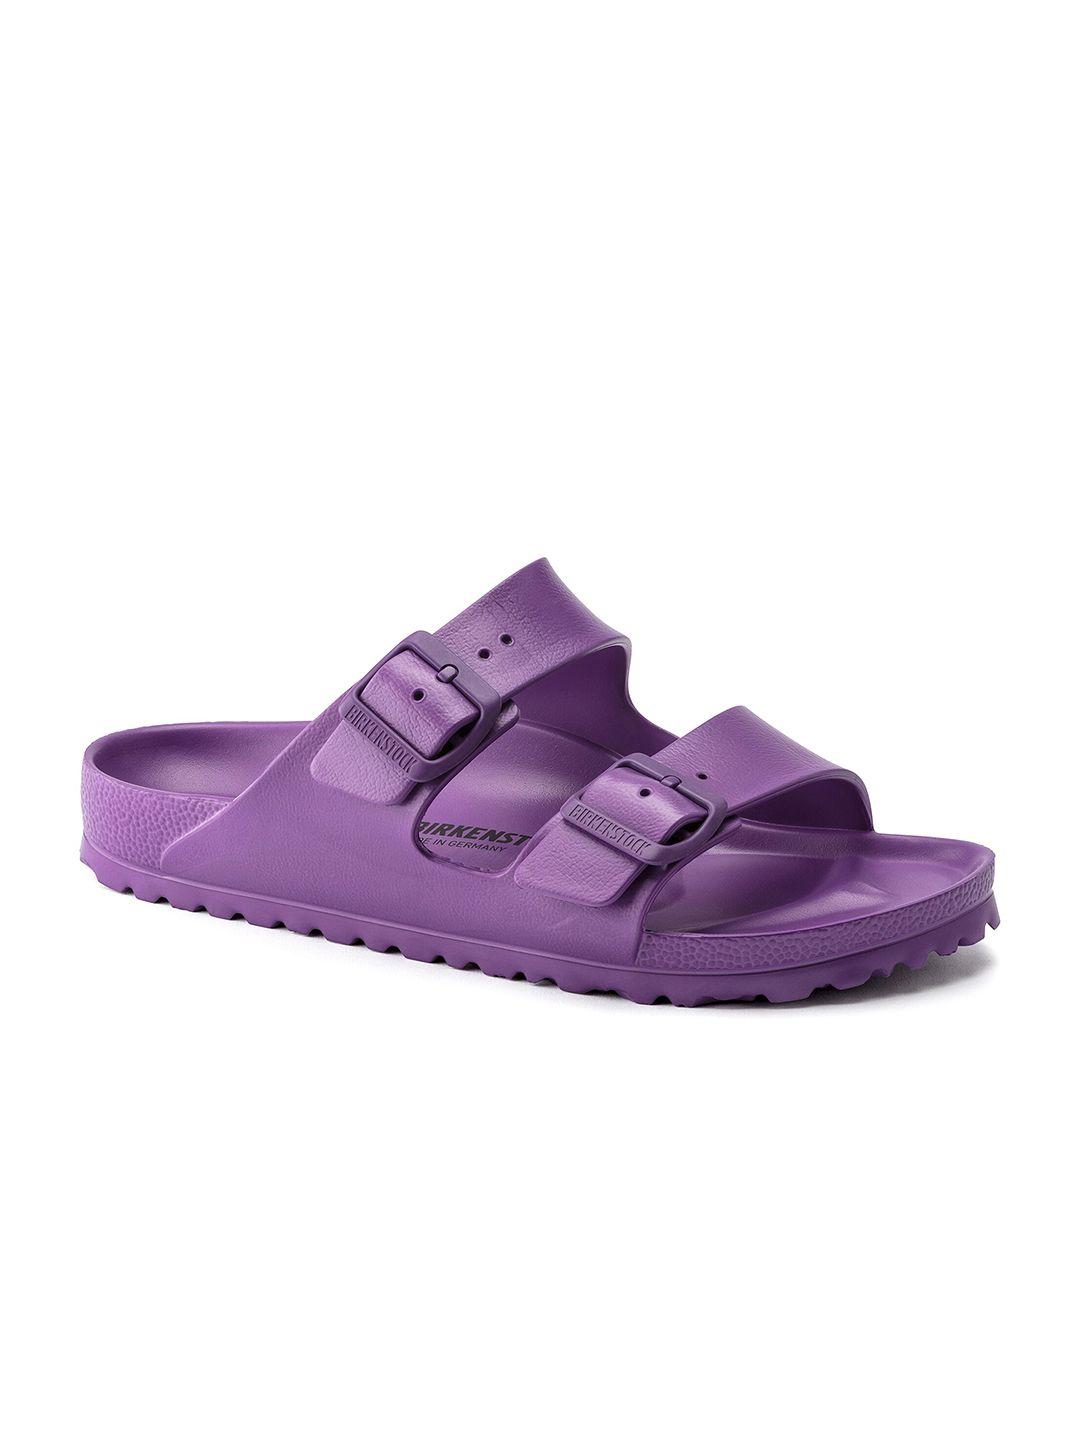 birkenstock unisex regular width purple arizona comfort sandals